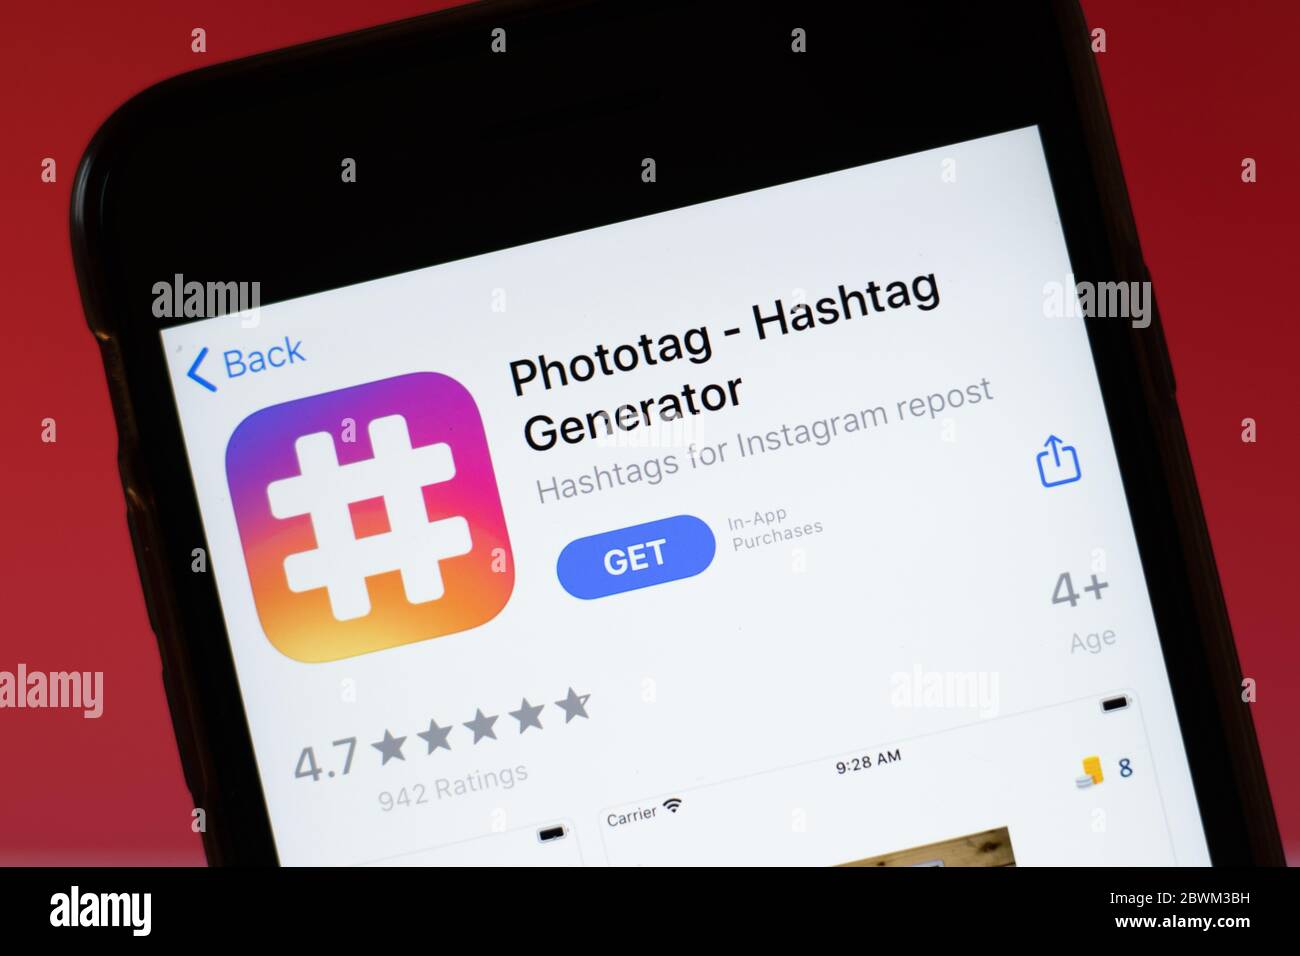 Moscou, Russie - 1er juin 2020 : Phototag hashtag Generator application mobile logo gros plan sur écran, montage. Banque D'Images